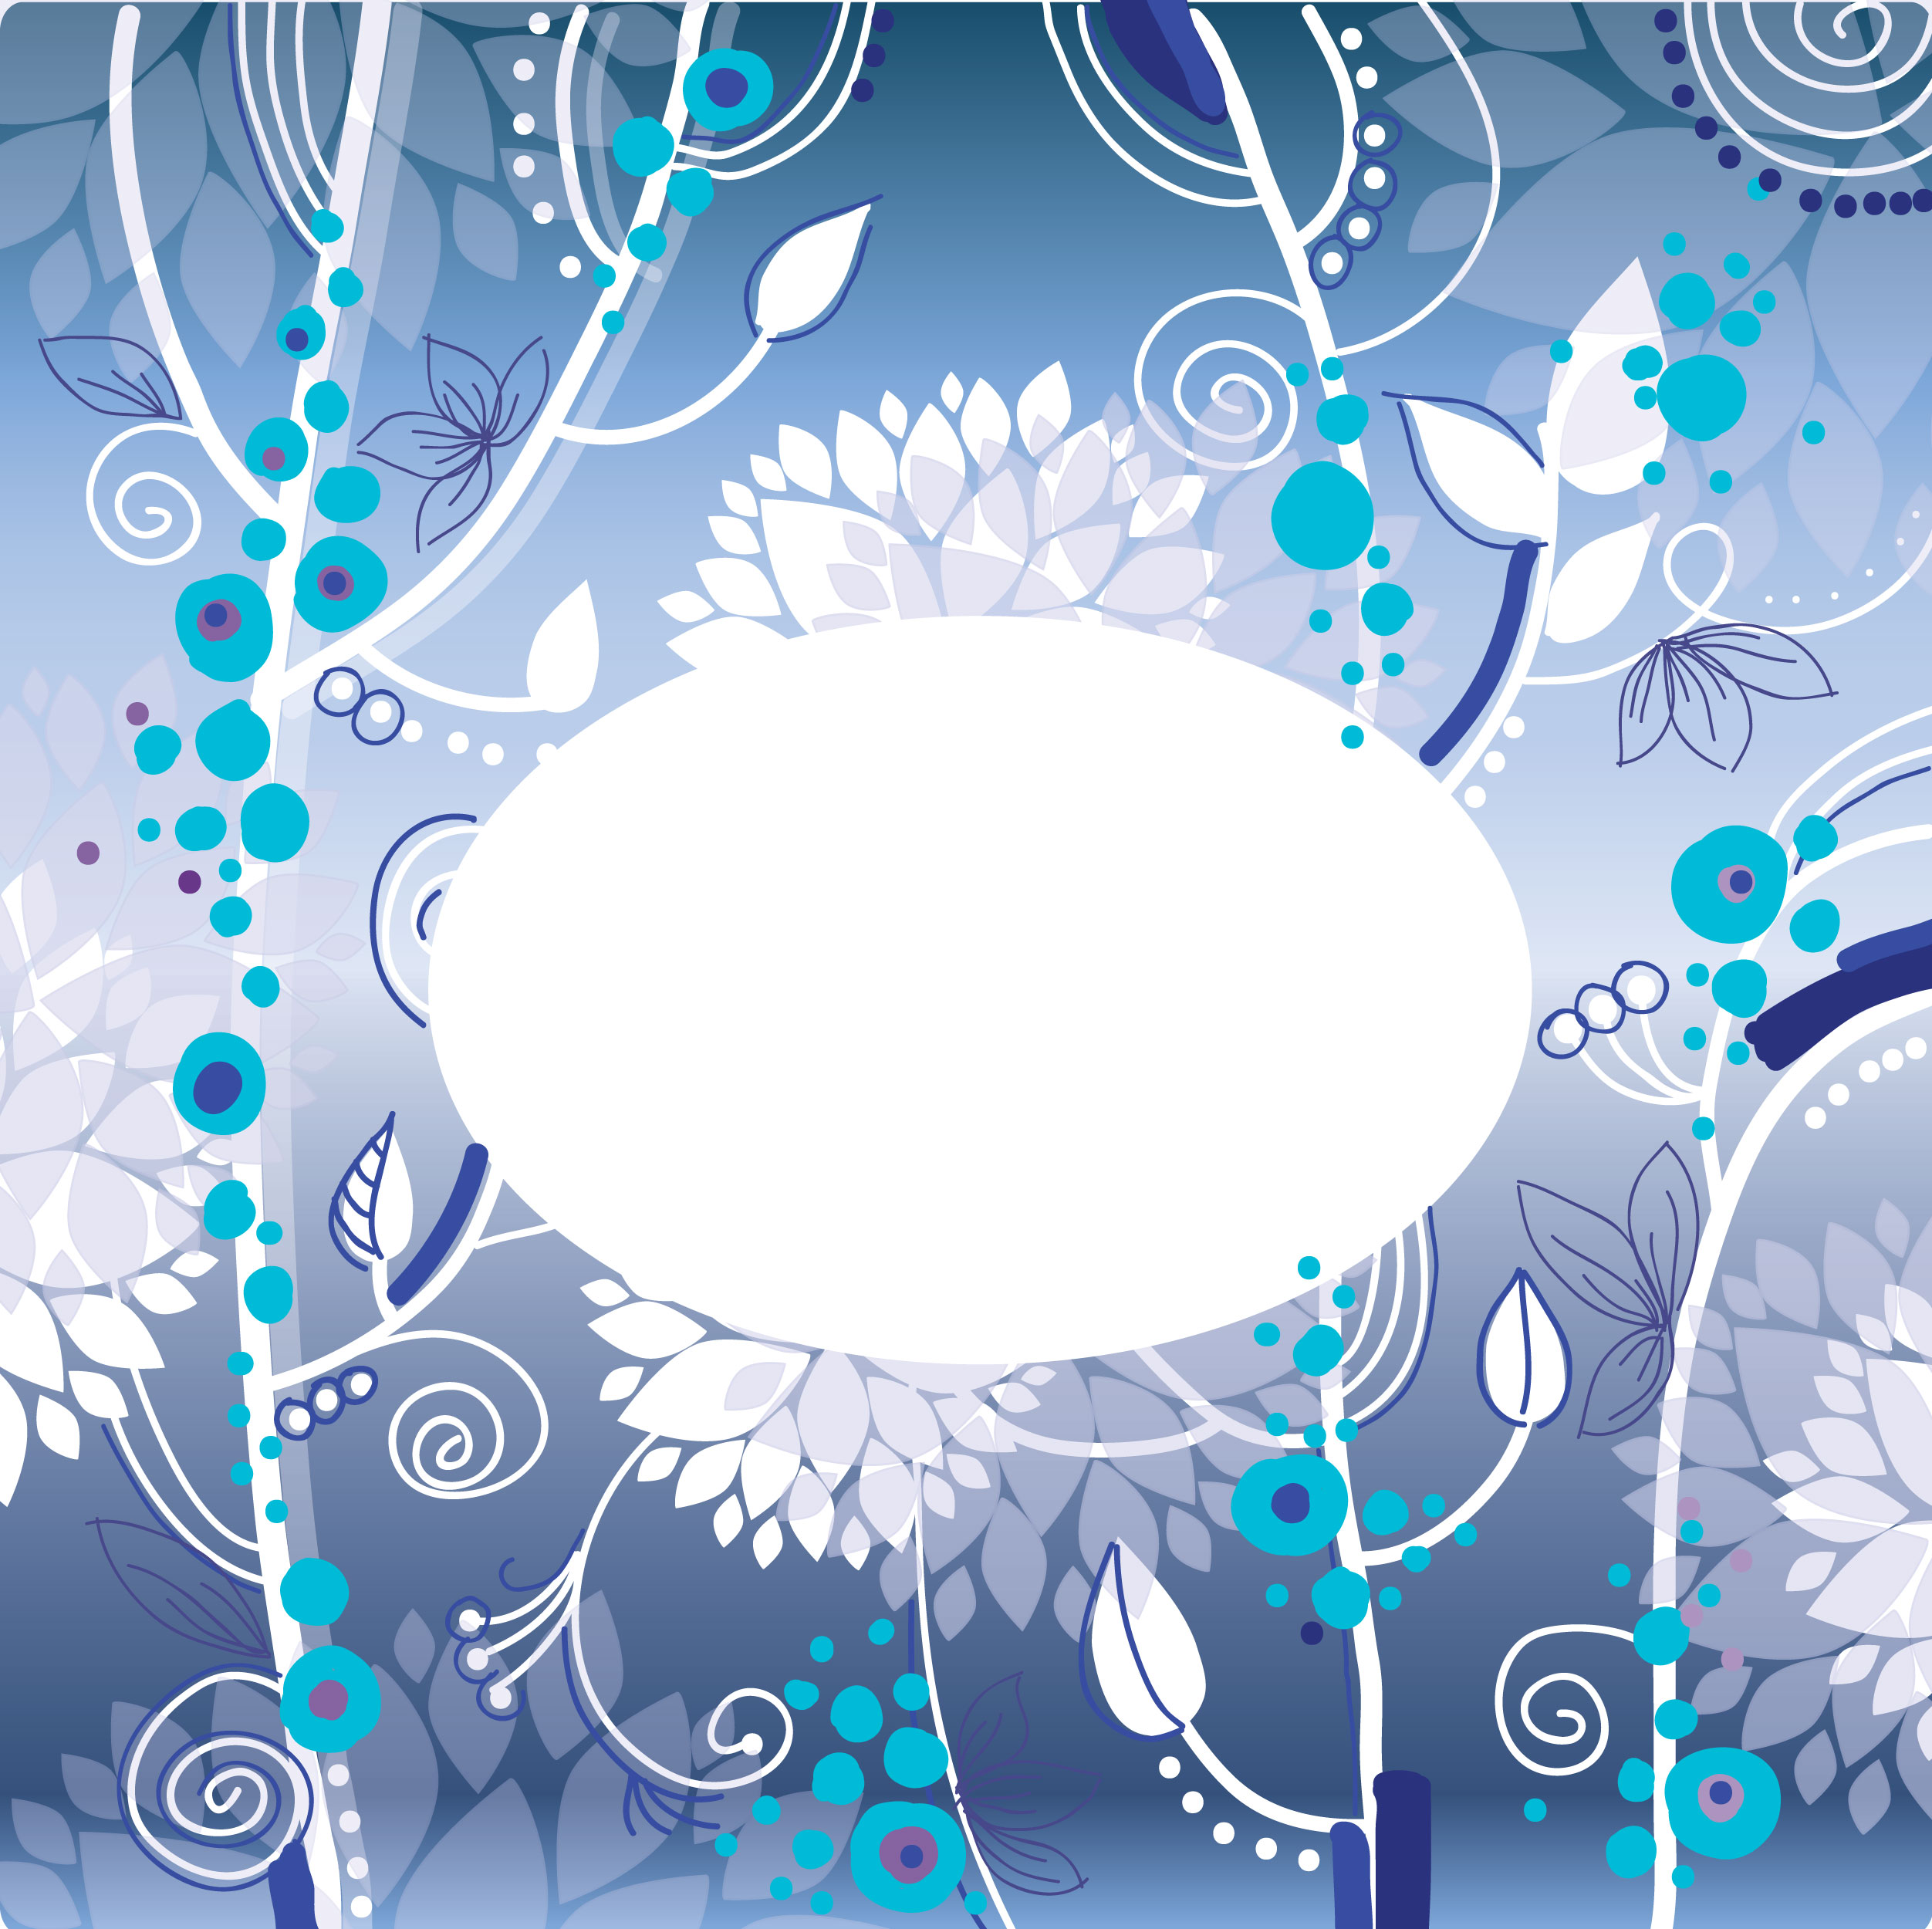 青い花のイラスト フリー素材 背景 壁紙no 343 青基調 冬 だ円窓